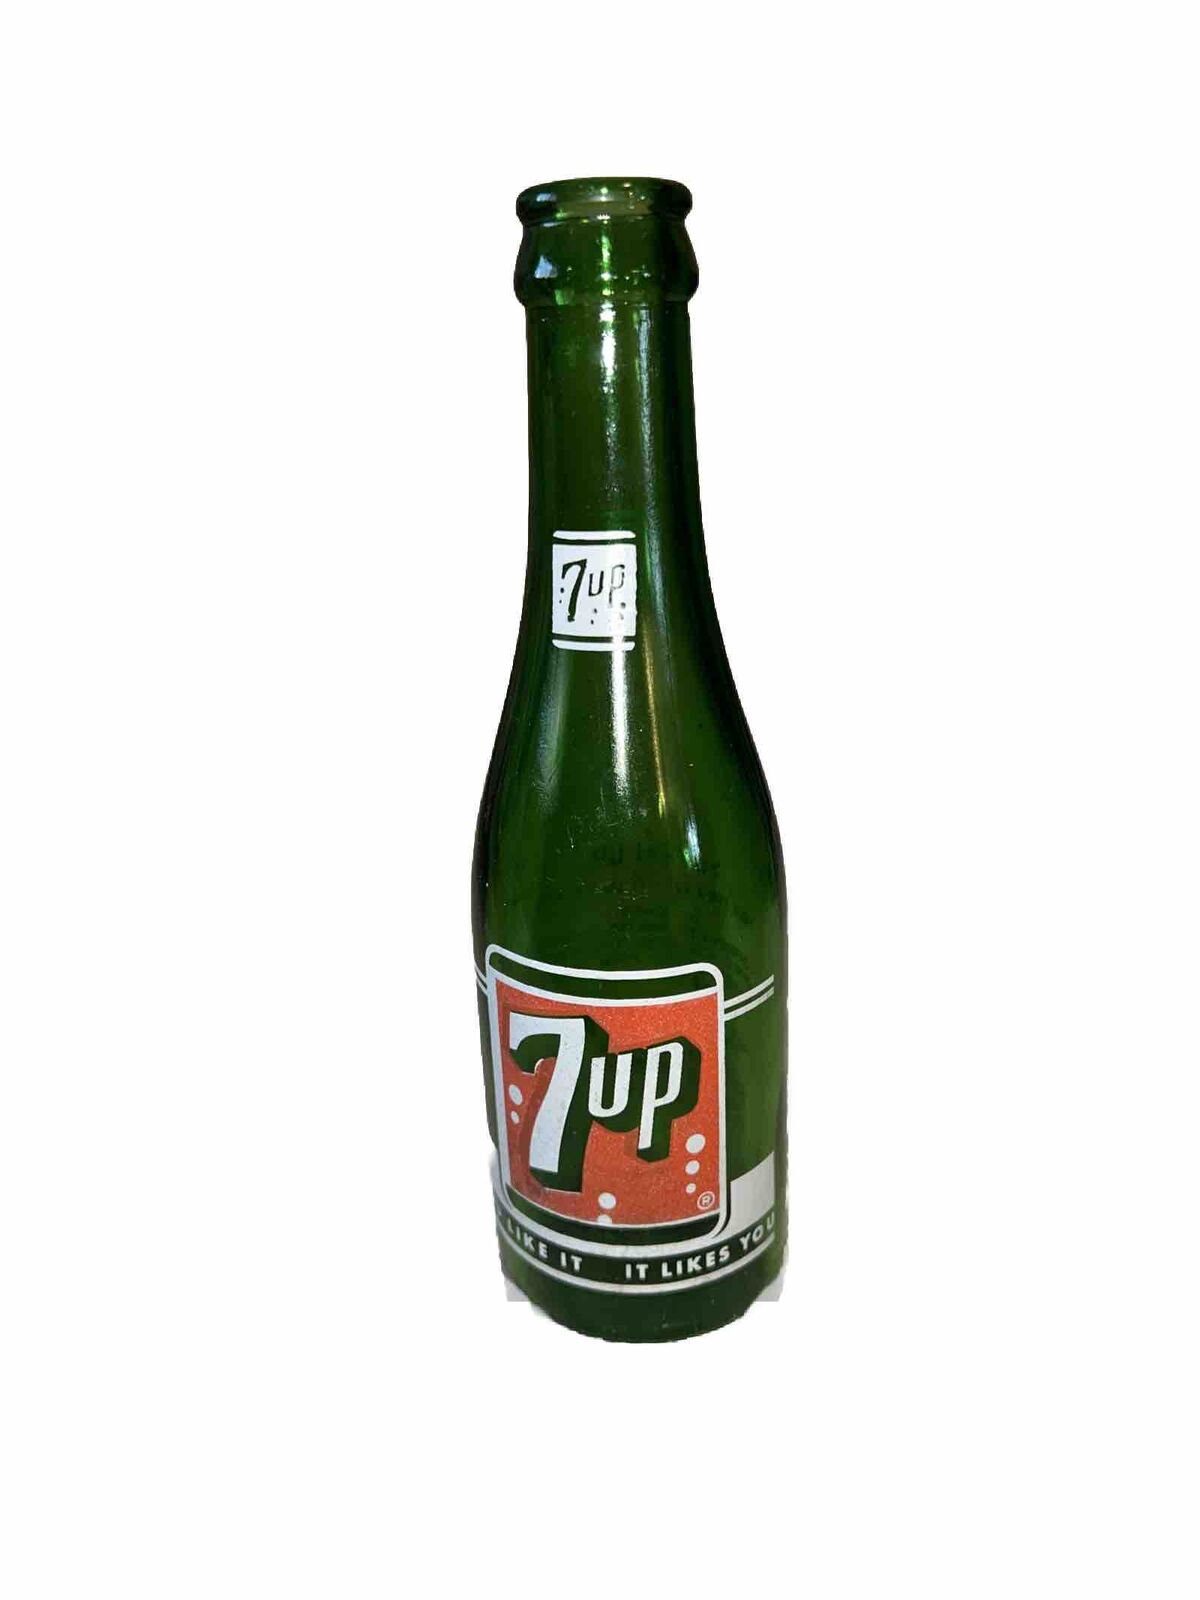 Vintage 7up Bottle 7 Fl Oz Beverages of Seattle Tacoma MINT CONDITION